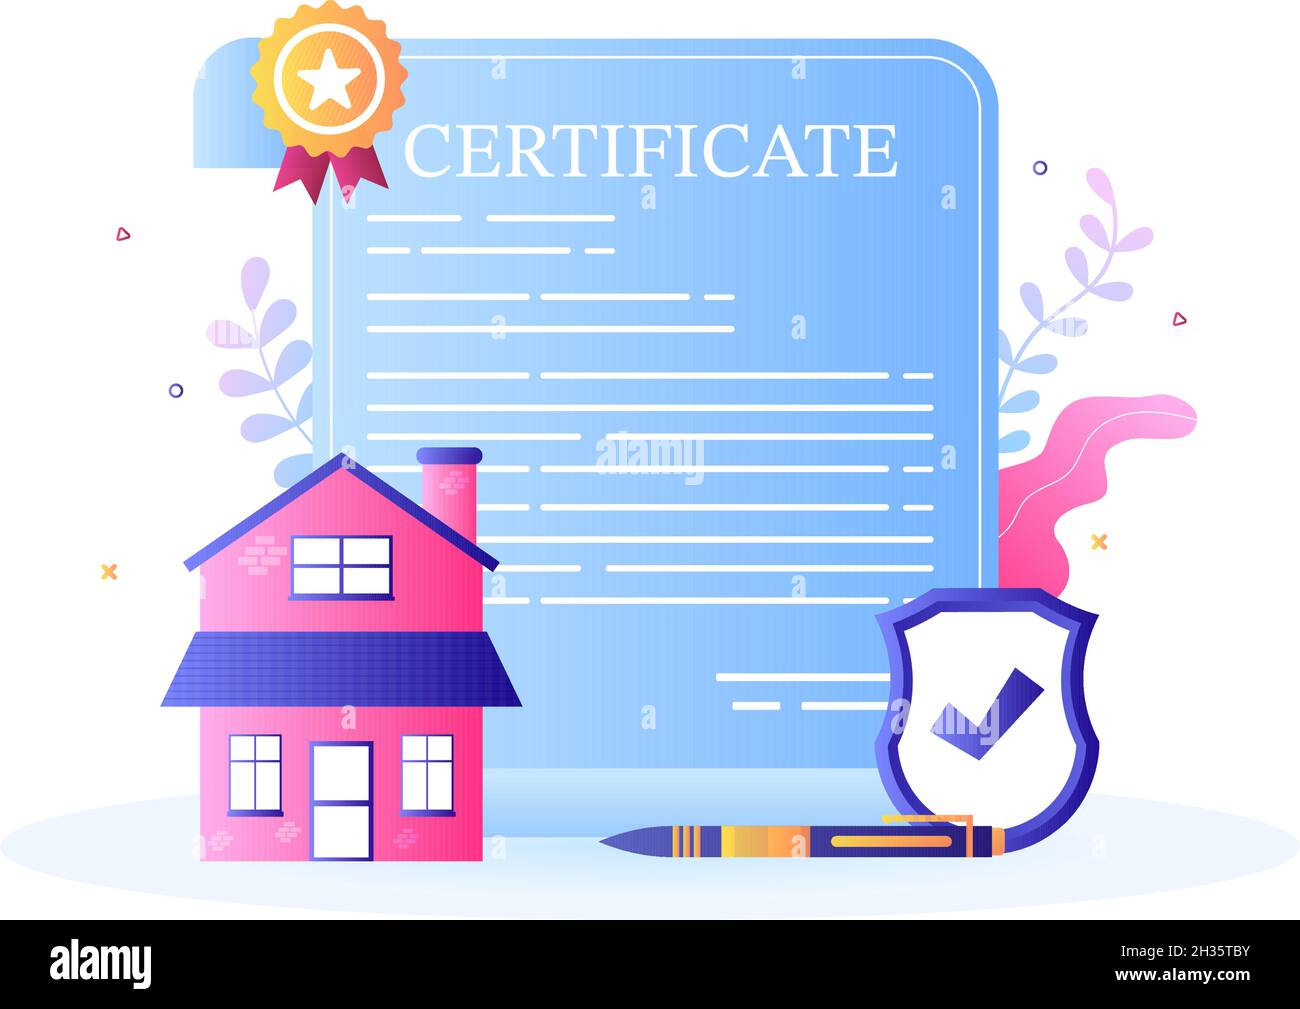 Certificato di proprietà per contratto di bene immobile, manutenzione di edificio e contratto di acquisto della casa trattare con timbro o licenza di sigillo. Background Vector il Illustrazione Vettoriale